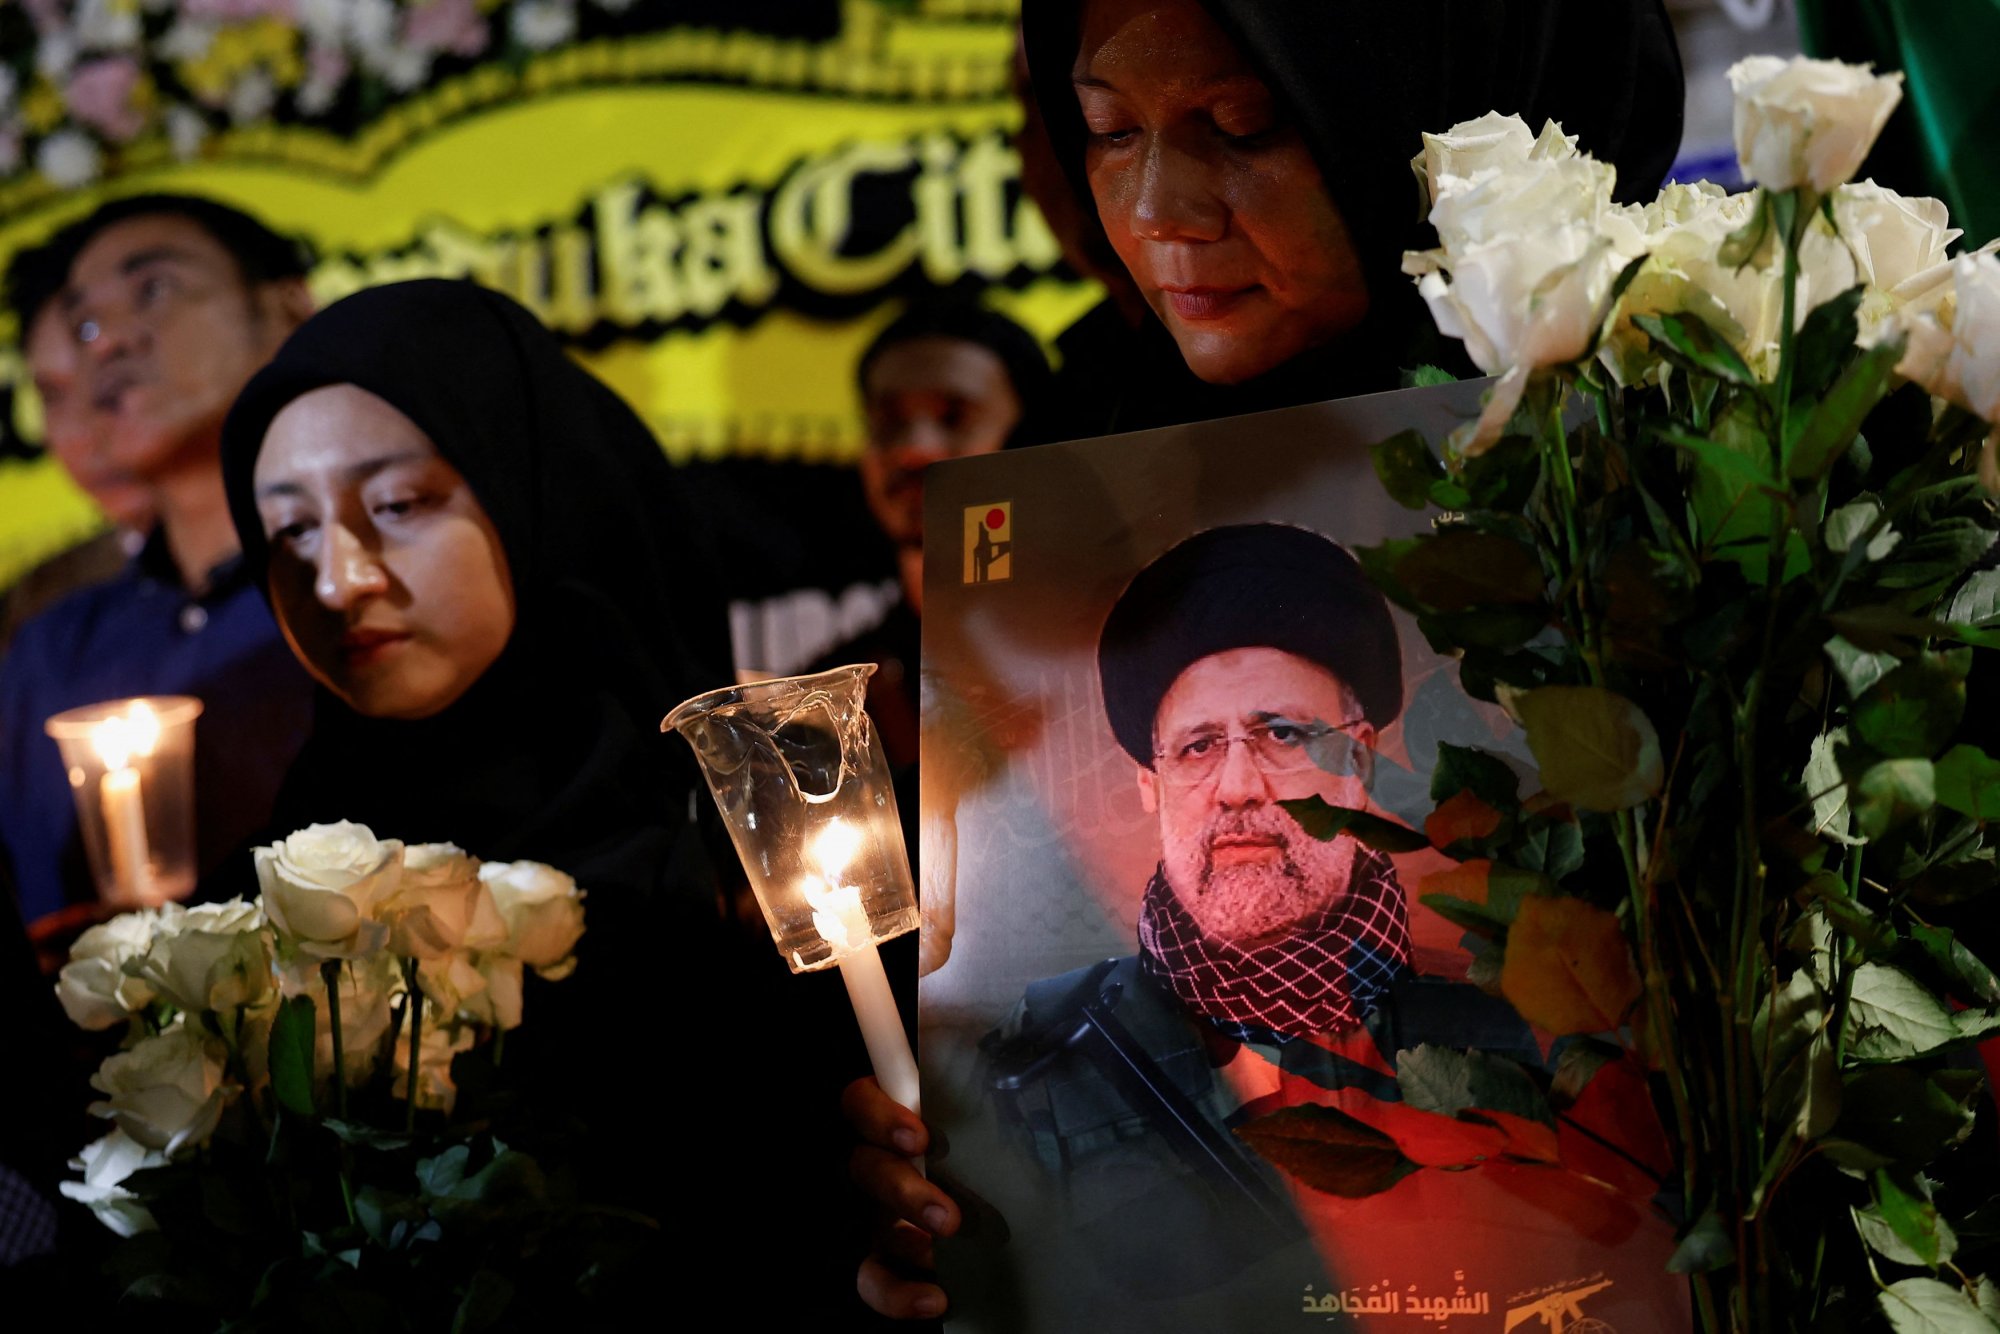 To Ιράν, ο θάνατος του προέδρου Ραϊσί και δύο κρίσιμα ανοιχτά ερωτήματα